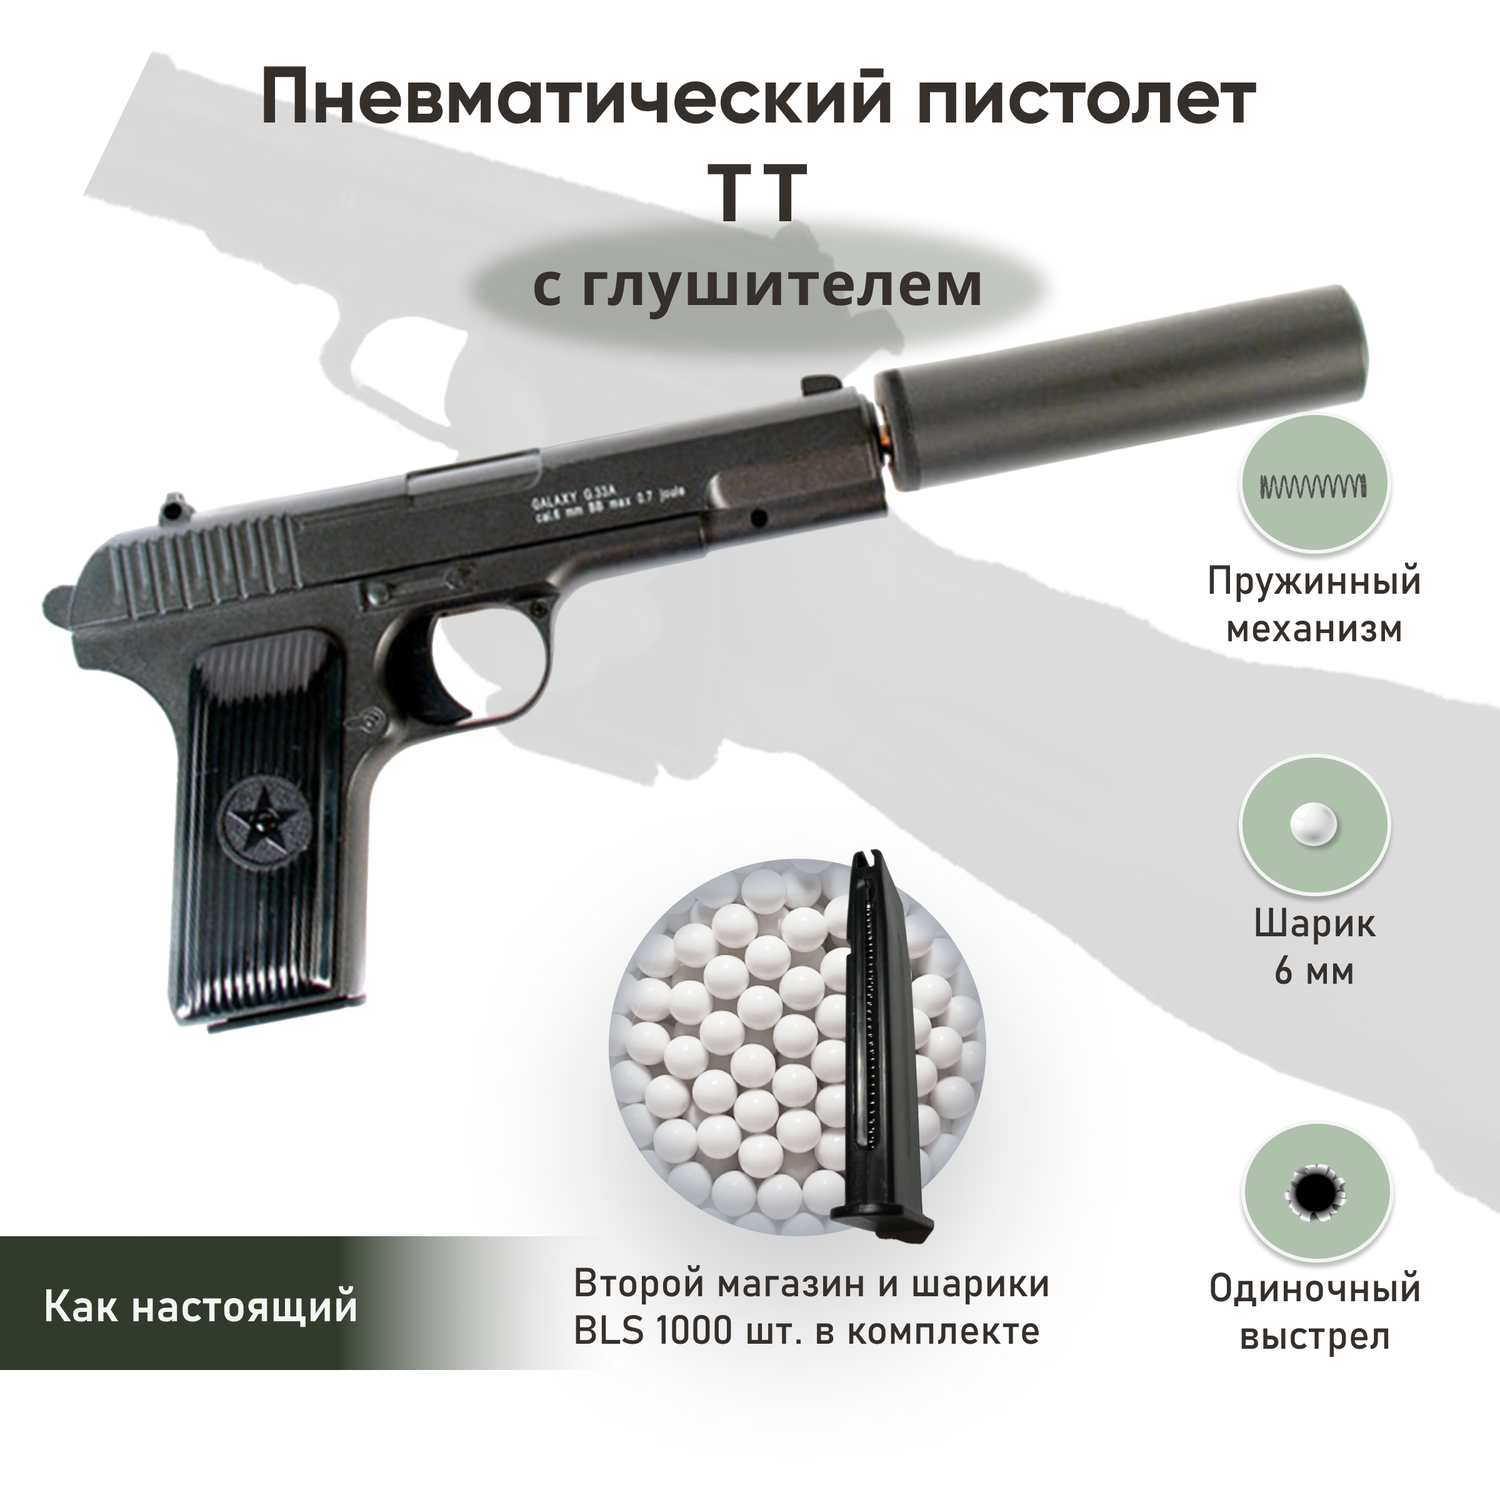 Пневматический пистолет Galaxy ТТ с глушителем второй магазин и шарики 1000 шт. - фото 2